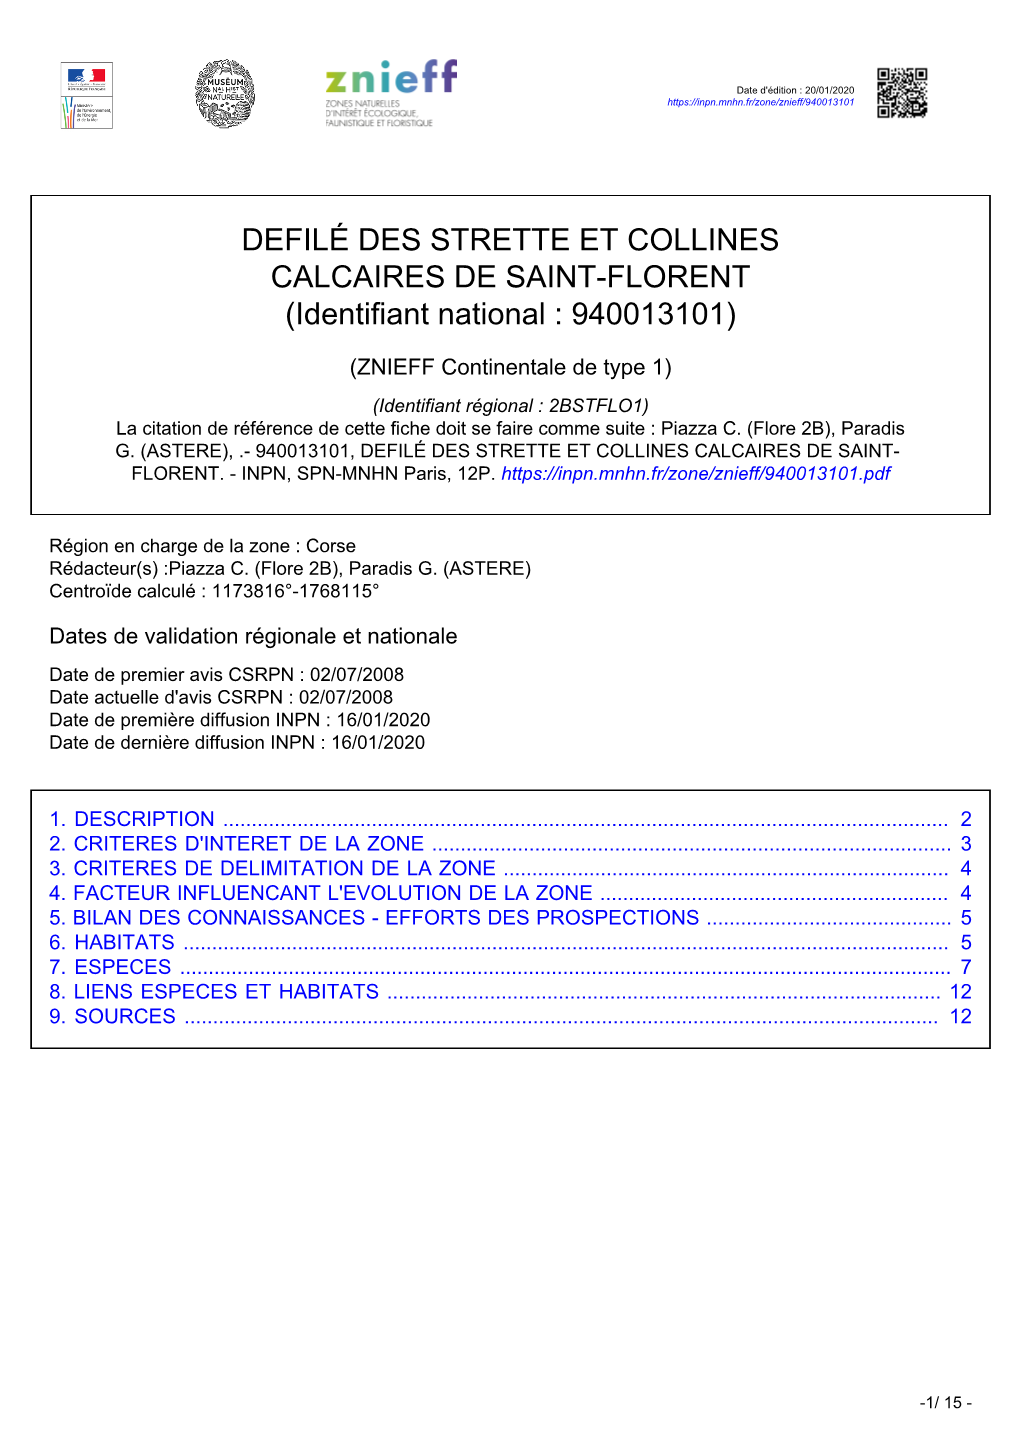 DEFILÉ DES STRETTE ET COLLINES CALCAIRES DE SAINT-FLORENT (Identifiant National : 940013101)